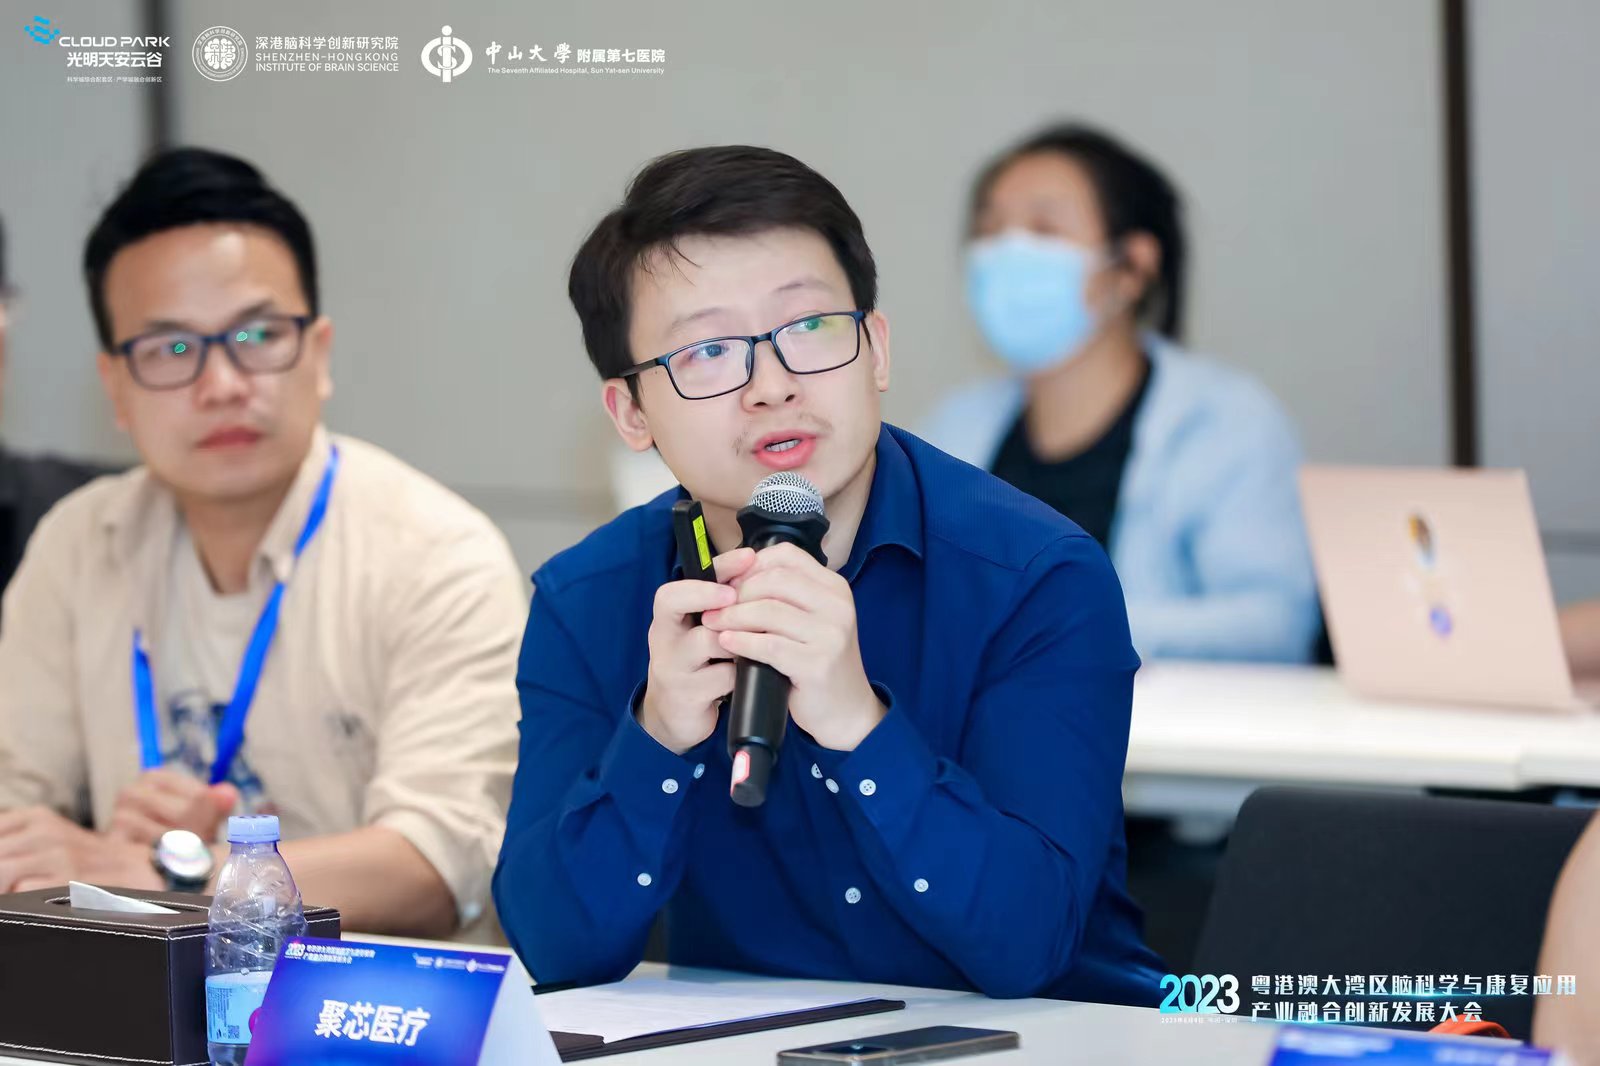 “医工研闭环”—聚芯医疗首席技术官刘香东在脑科学与康复应用产业融合创新发展大会发表深度解析